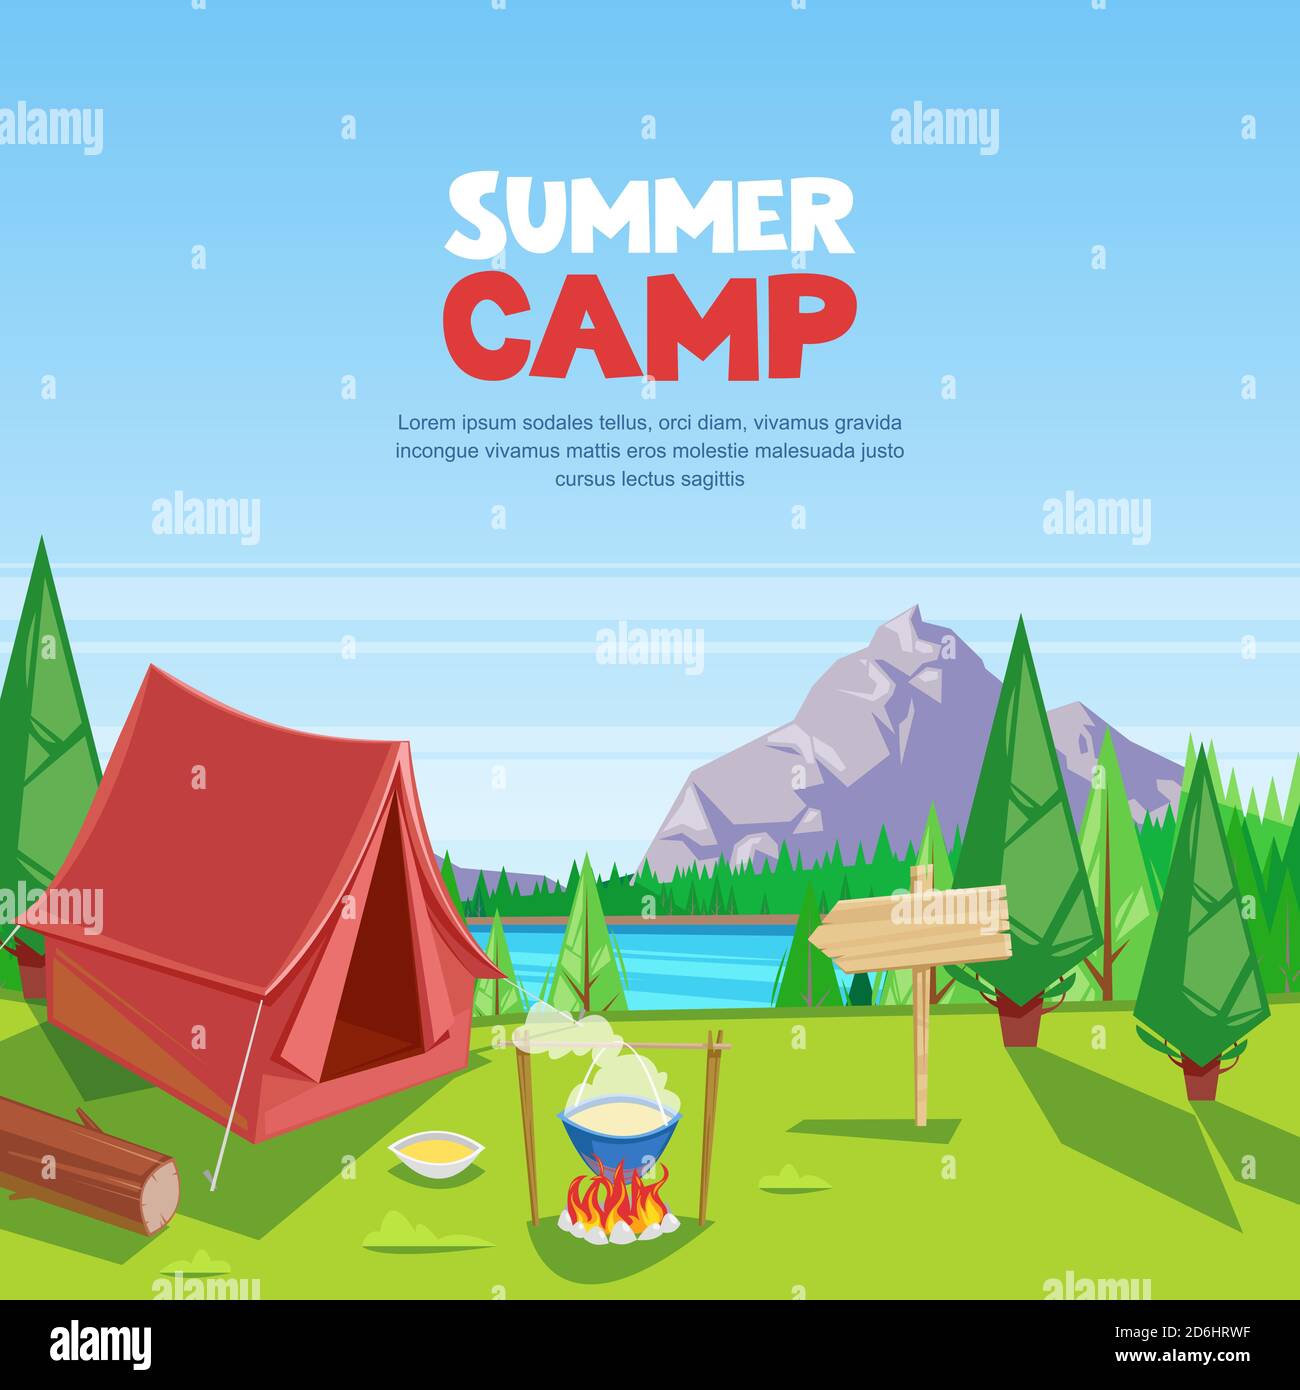 Sommer Camping Vektor Cartoon Illustration. Abenteuer, Reisen und Öko-Tourismus Konzept. Touristisches Zeltlager auf Wiese. Natur Landschaft Hintergrund. Stock Vektor